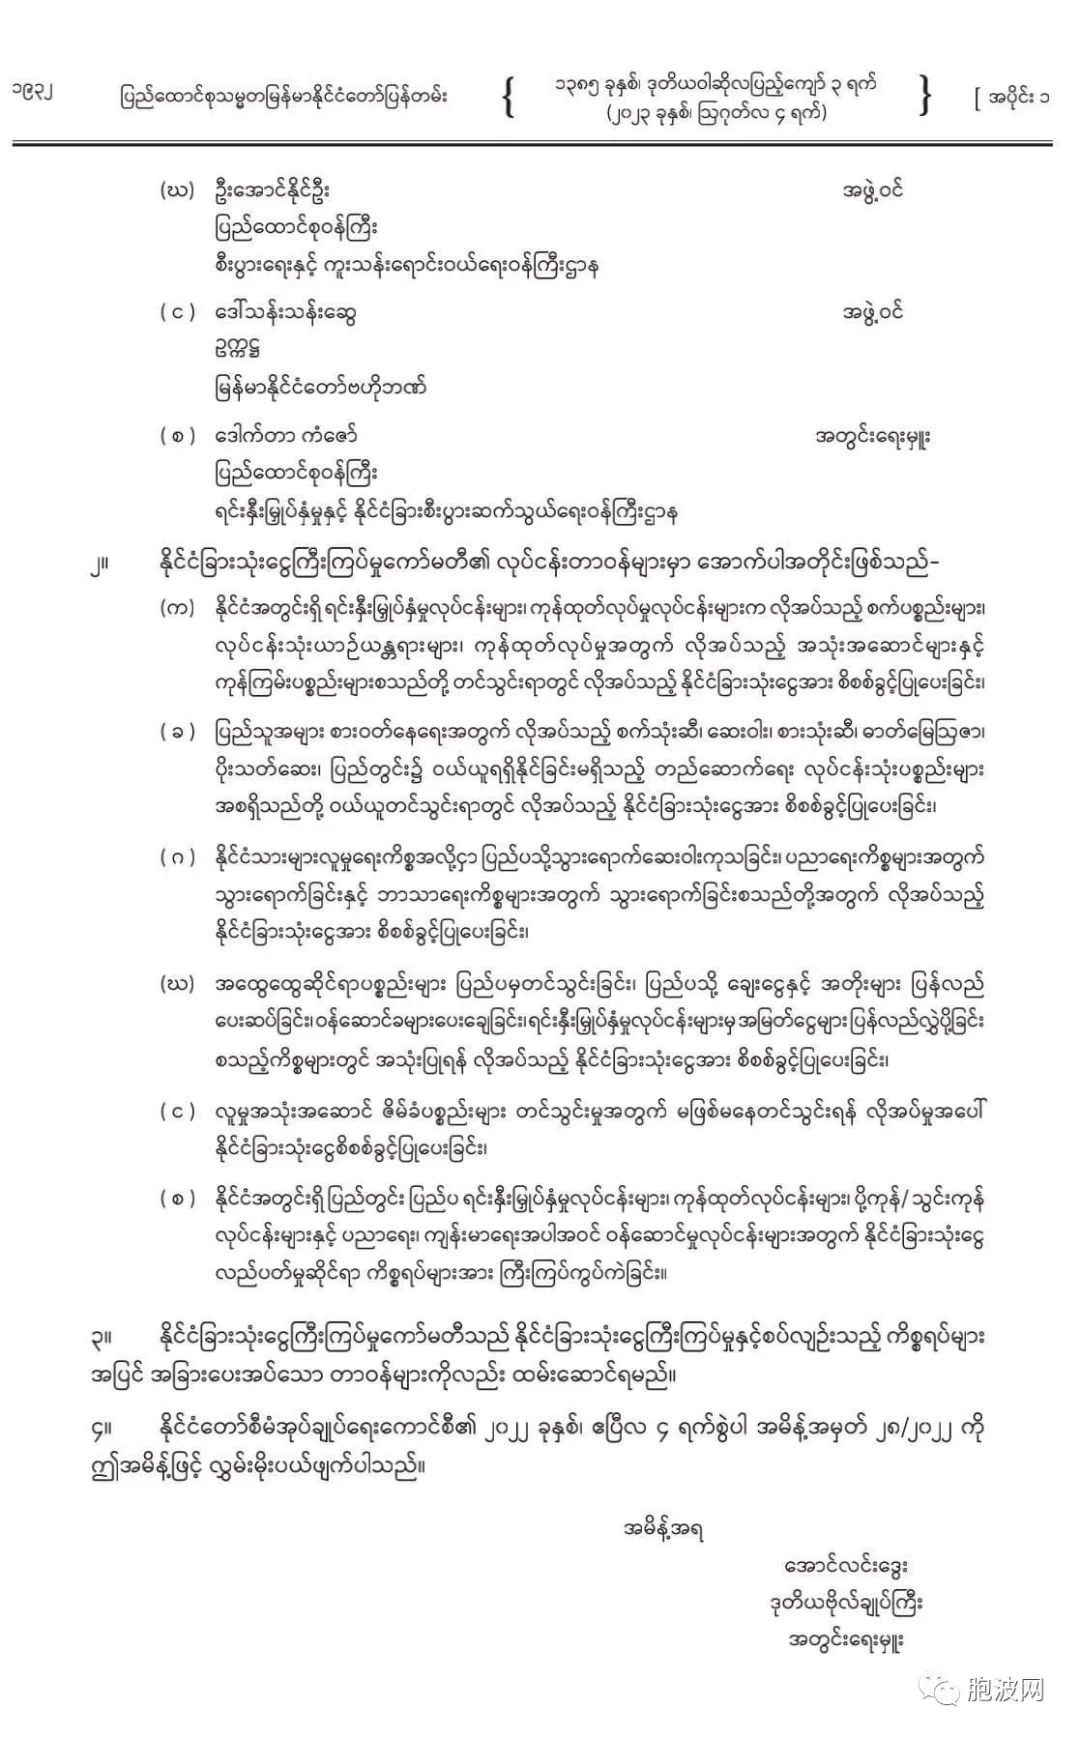 缅甸国管委命令重组外汇管理委员会